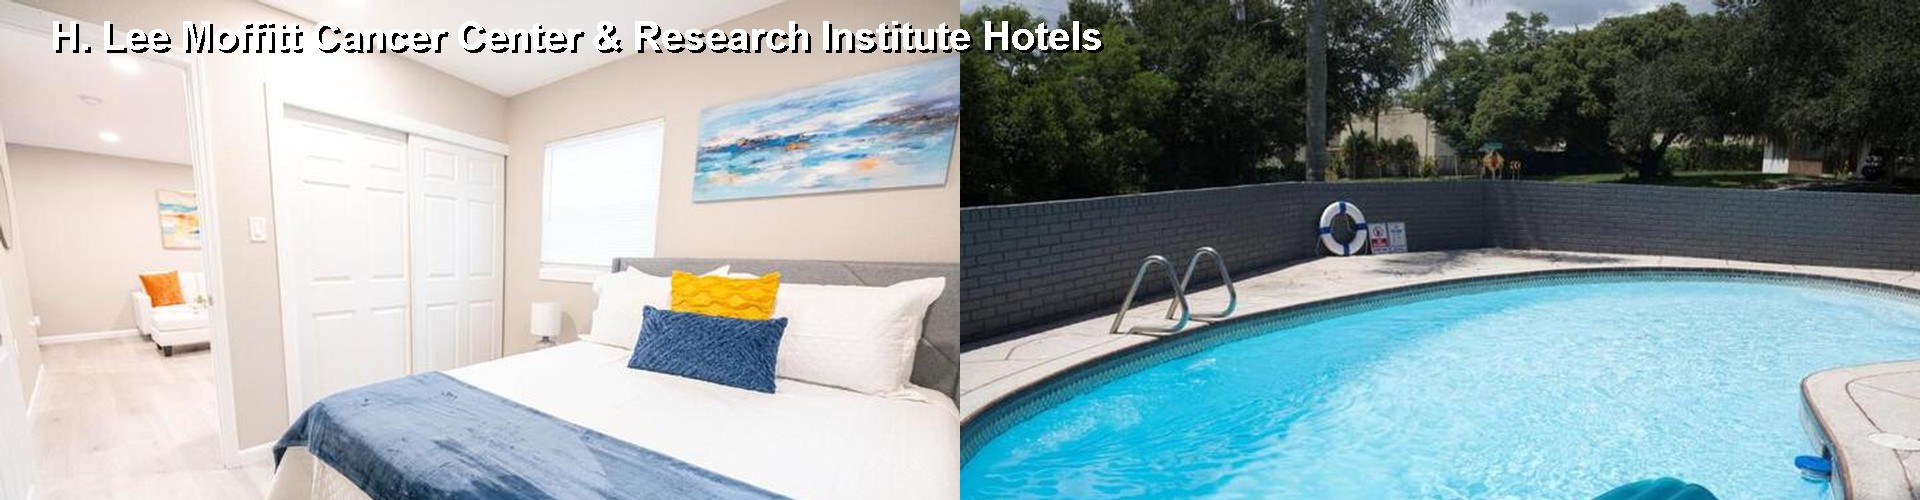 4 Best Hotels near H. Lee Moffitt Cancer Center & Research Institute